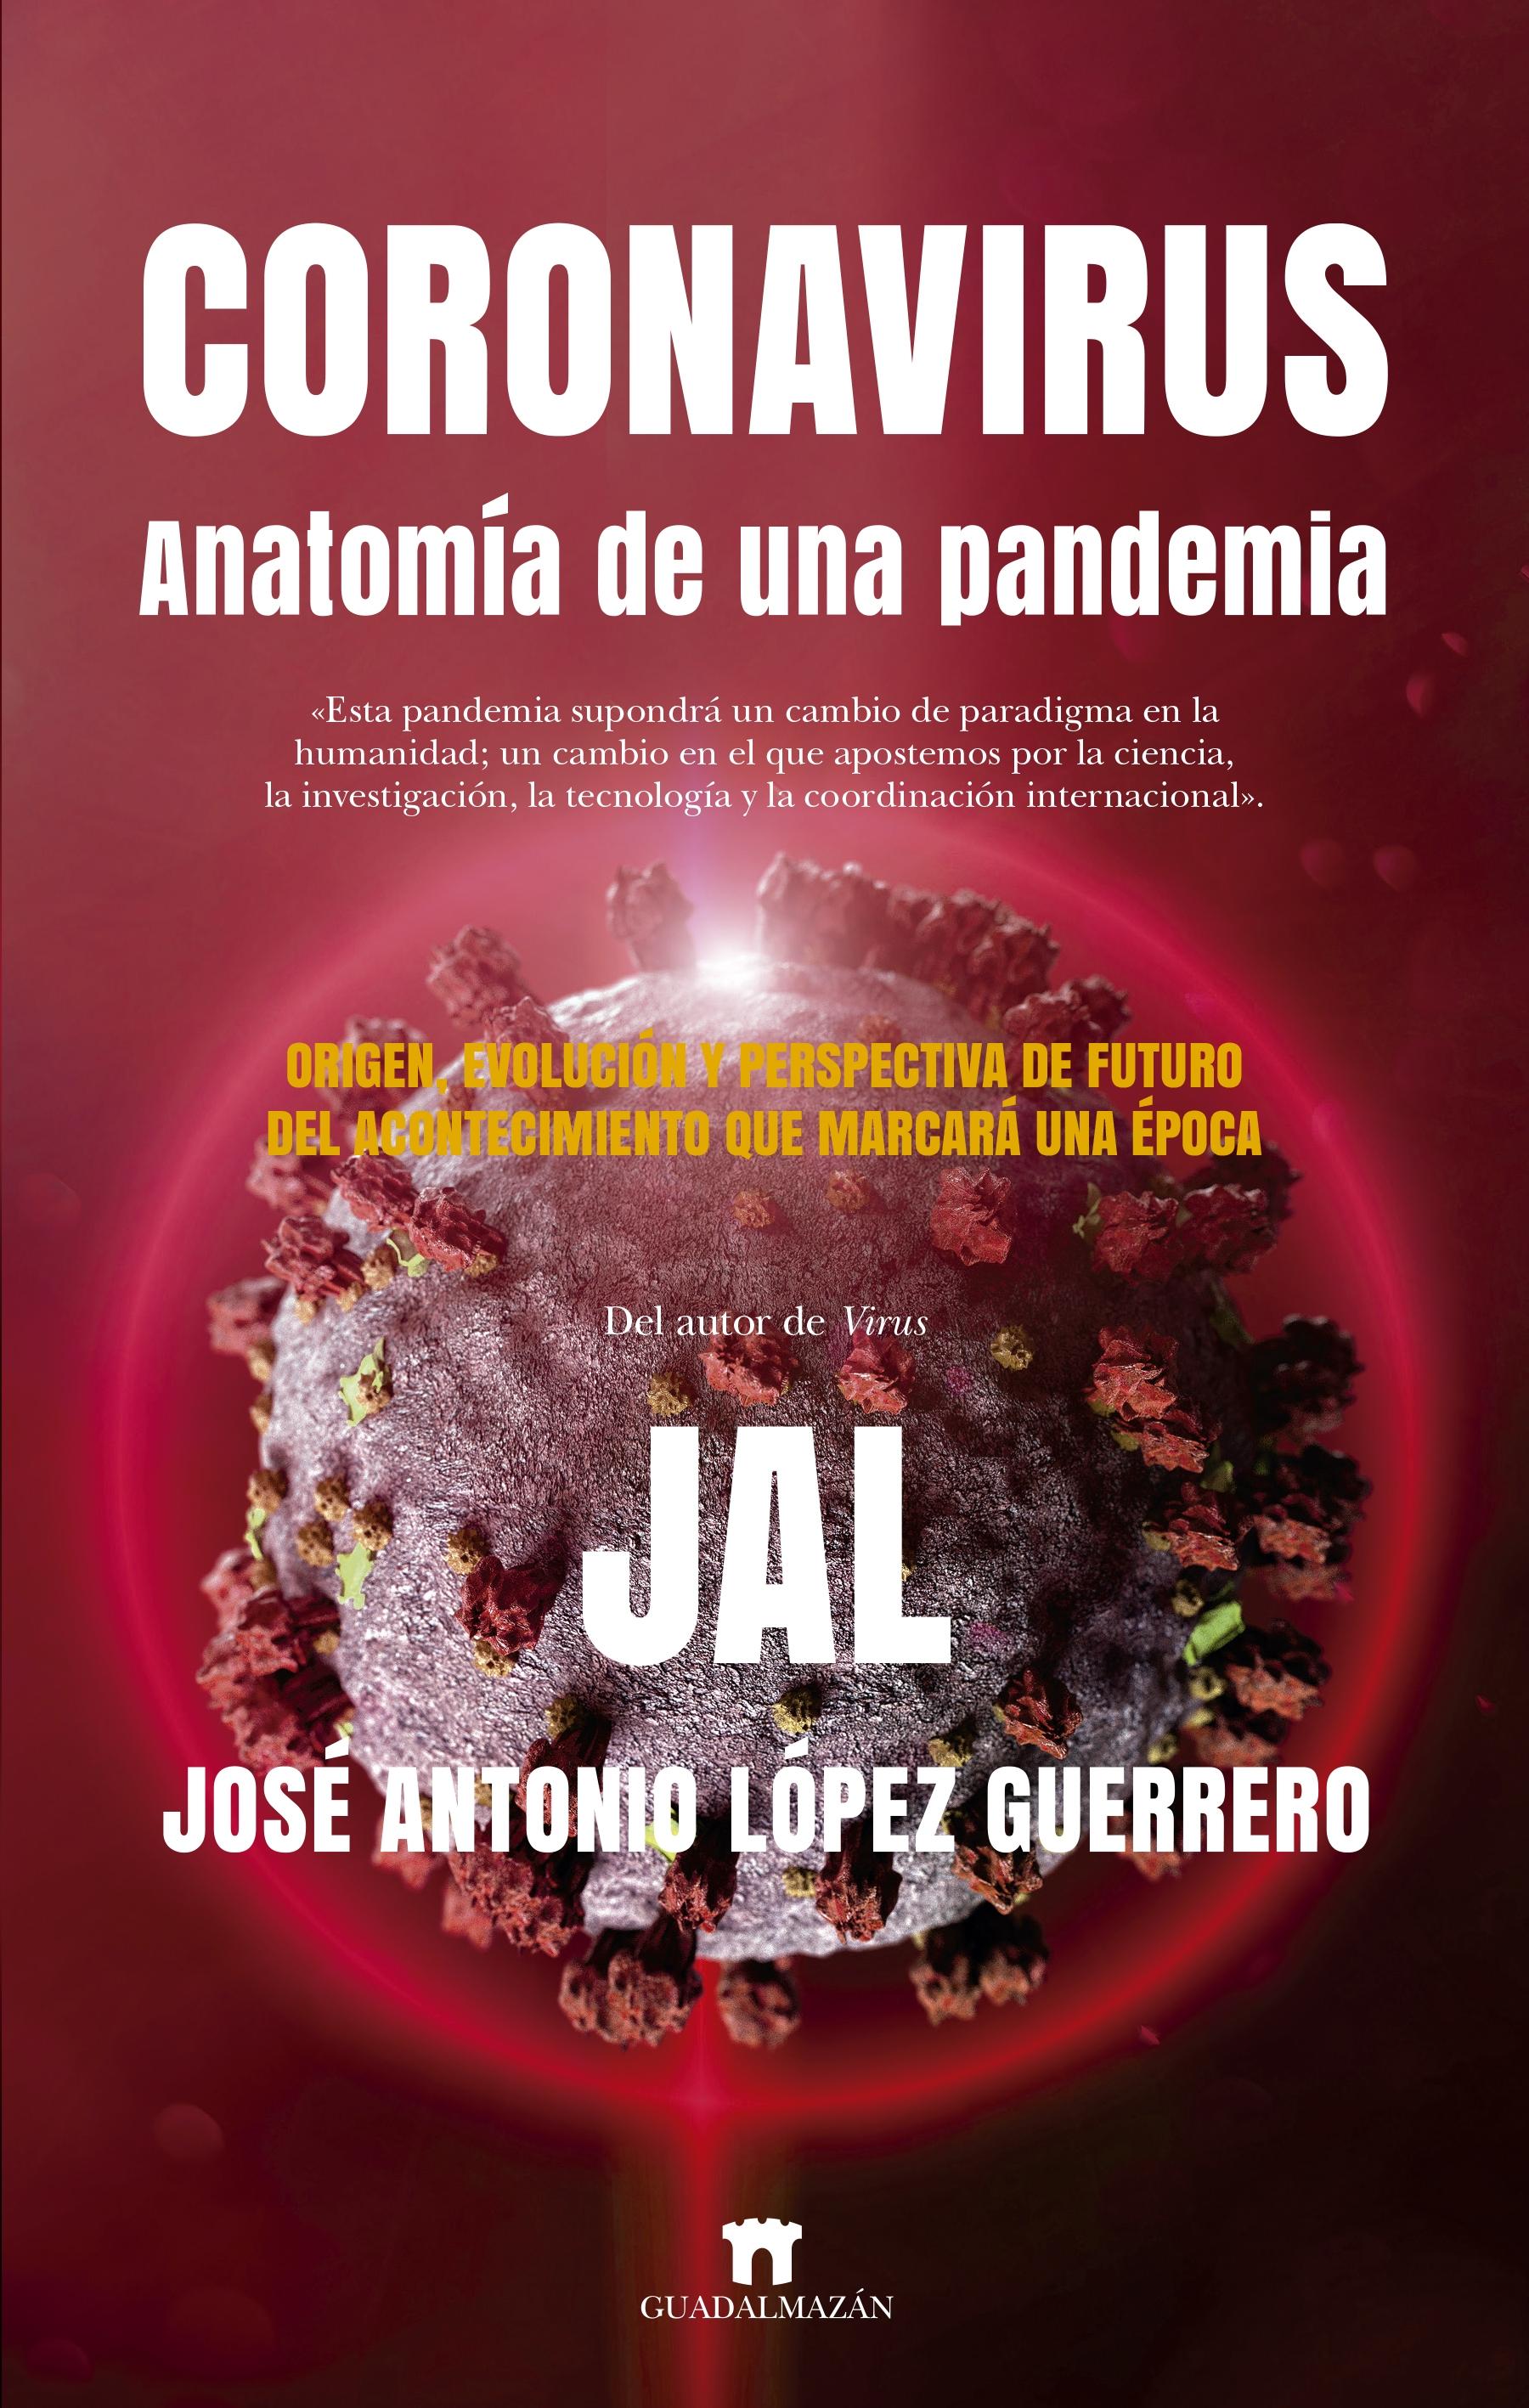 Coronavirus. Anatomía de una pandemia "Origen, evolución y perspectiva de futuro del acontecimiento que marcará"